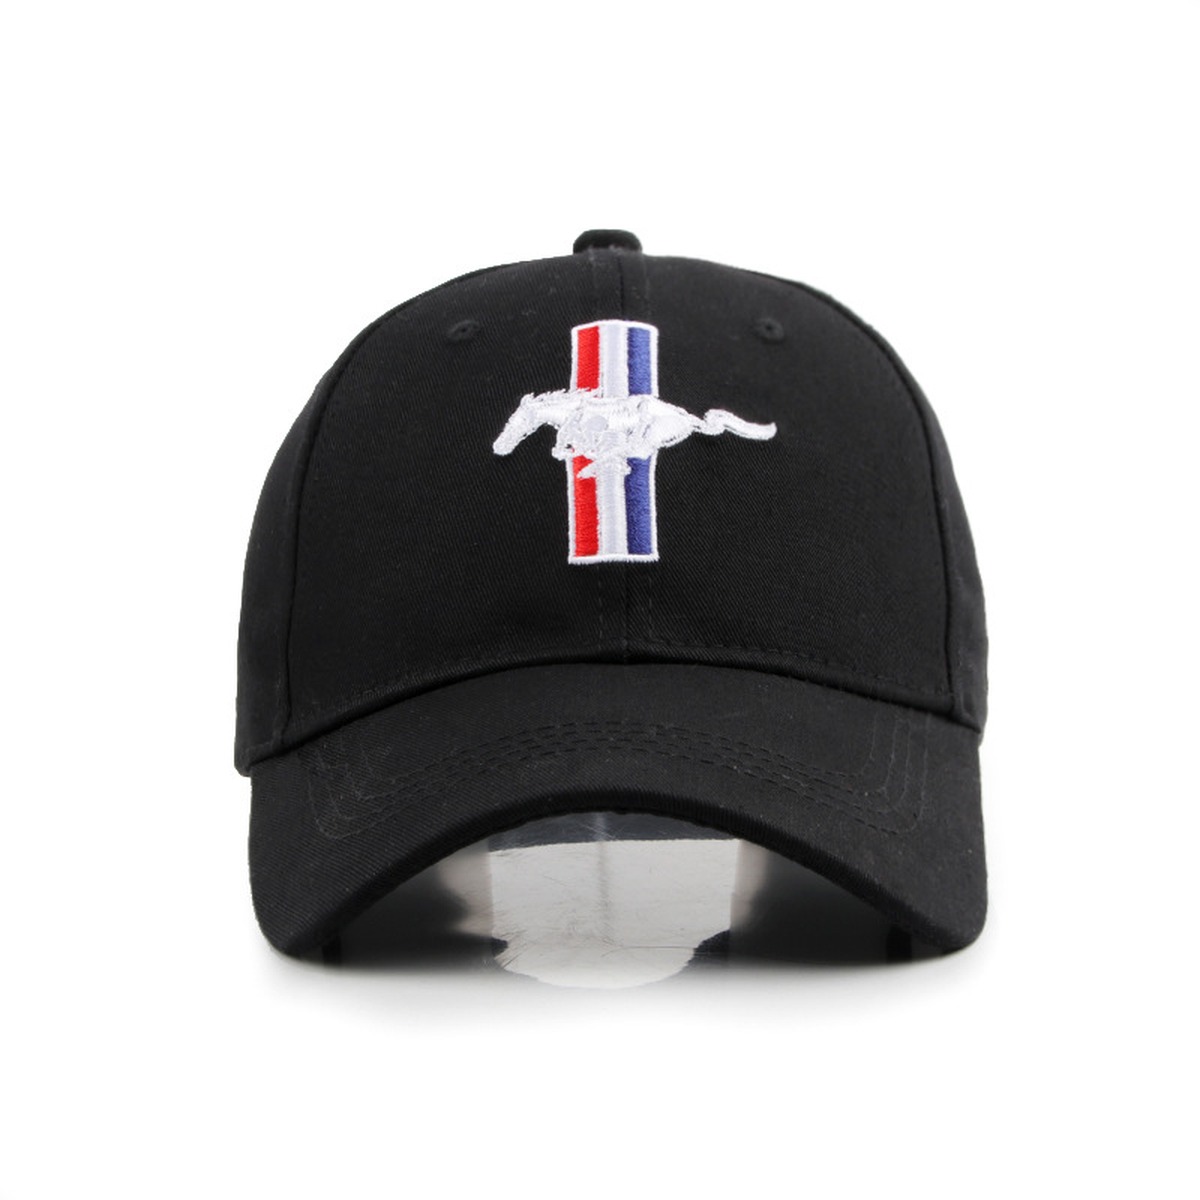 Baseball Caps - Mustang Black